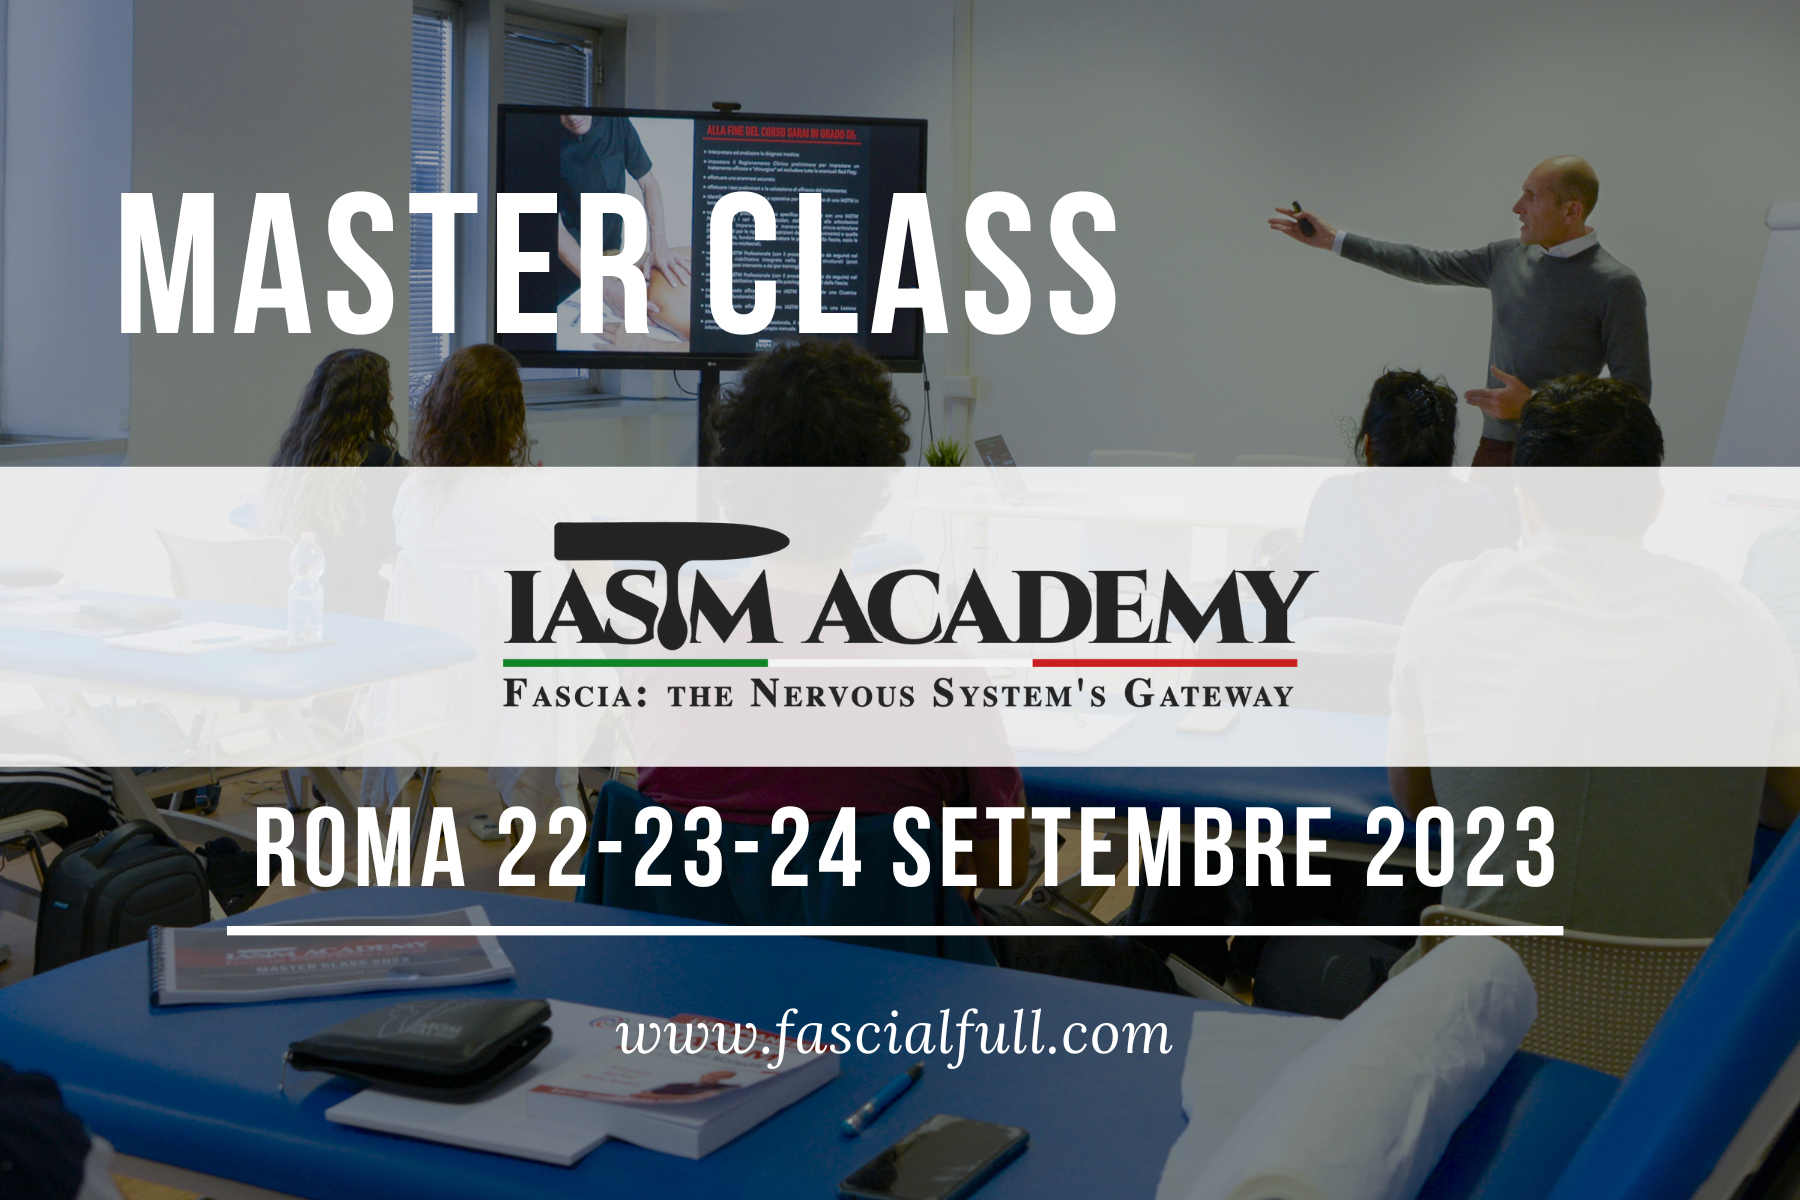 IASTM Academy